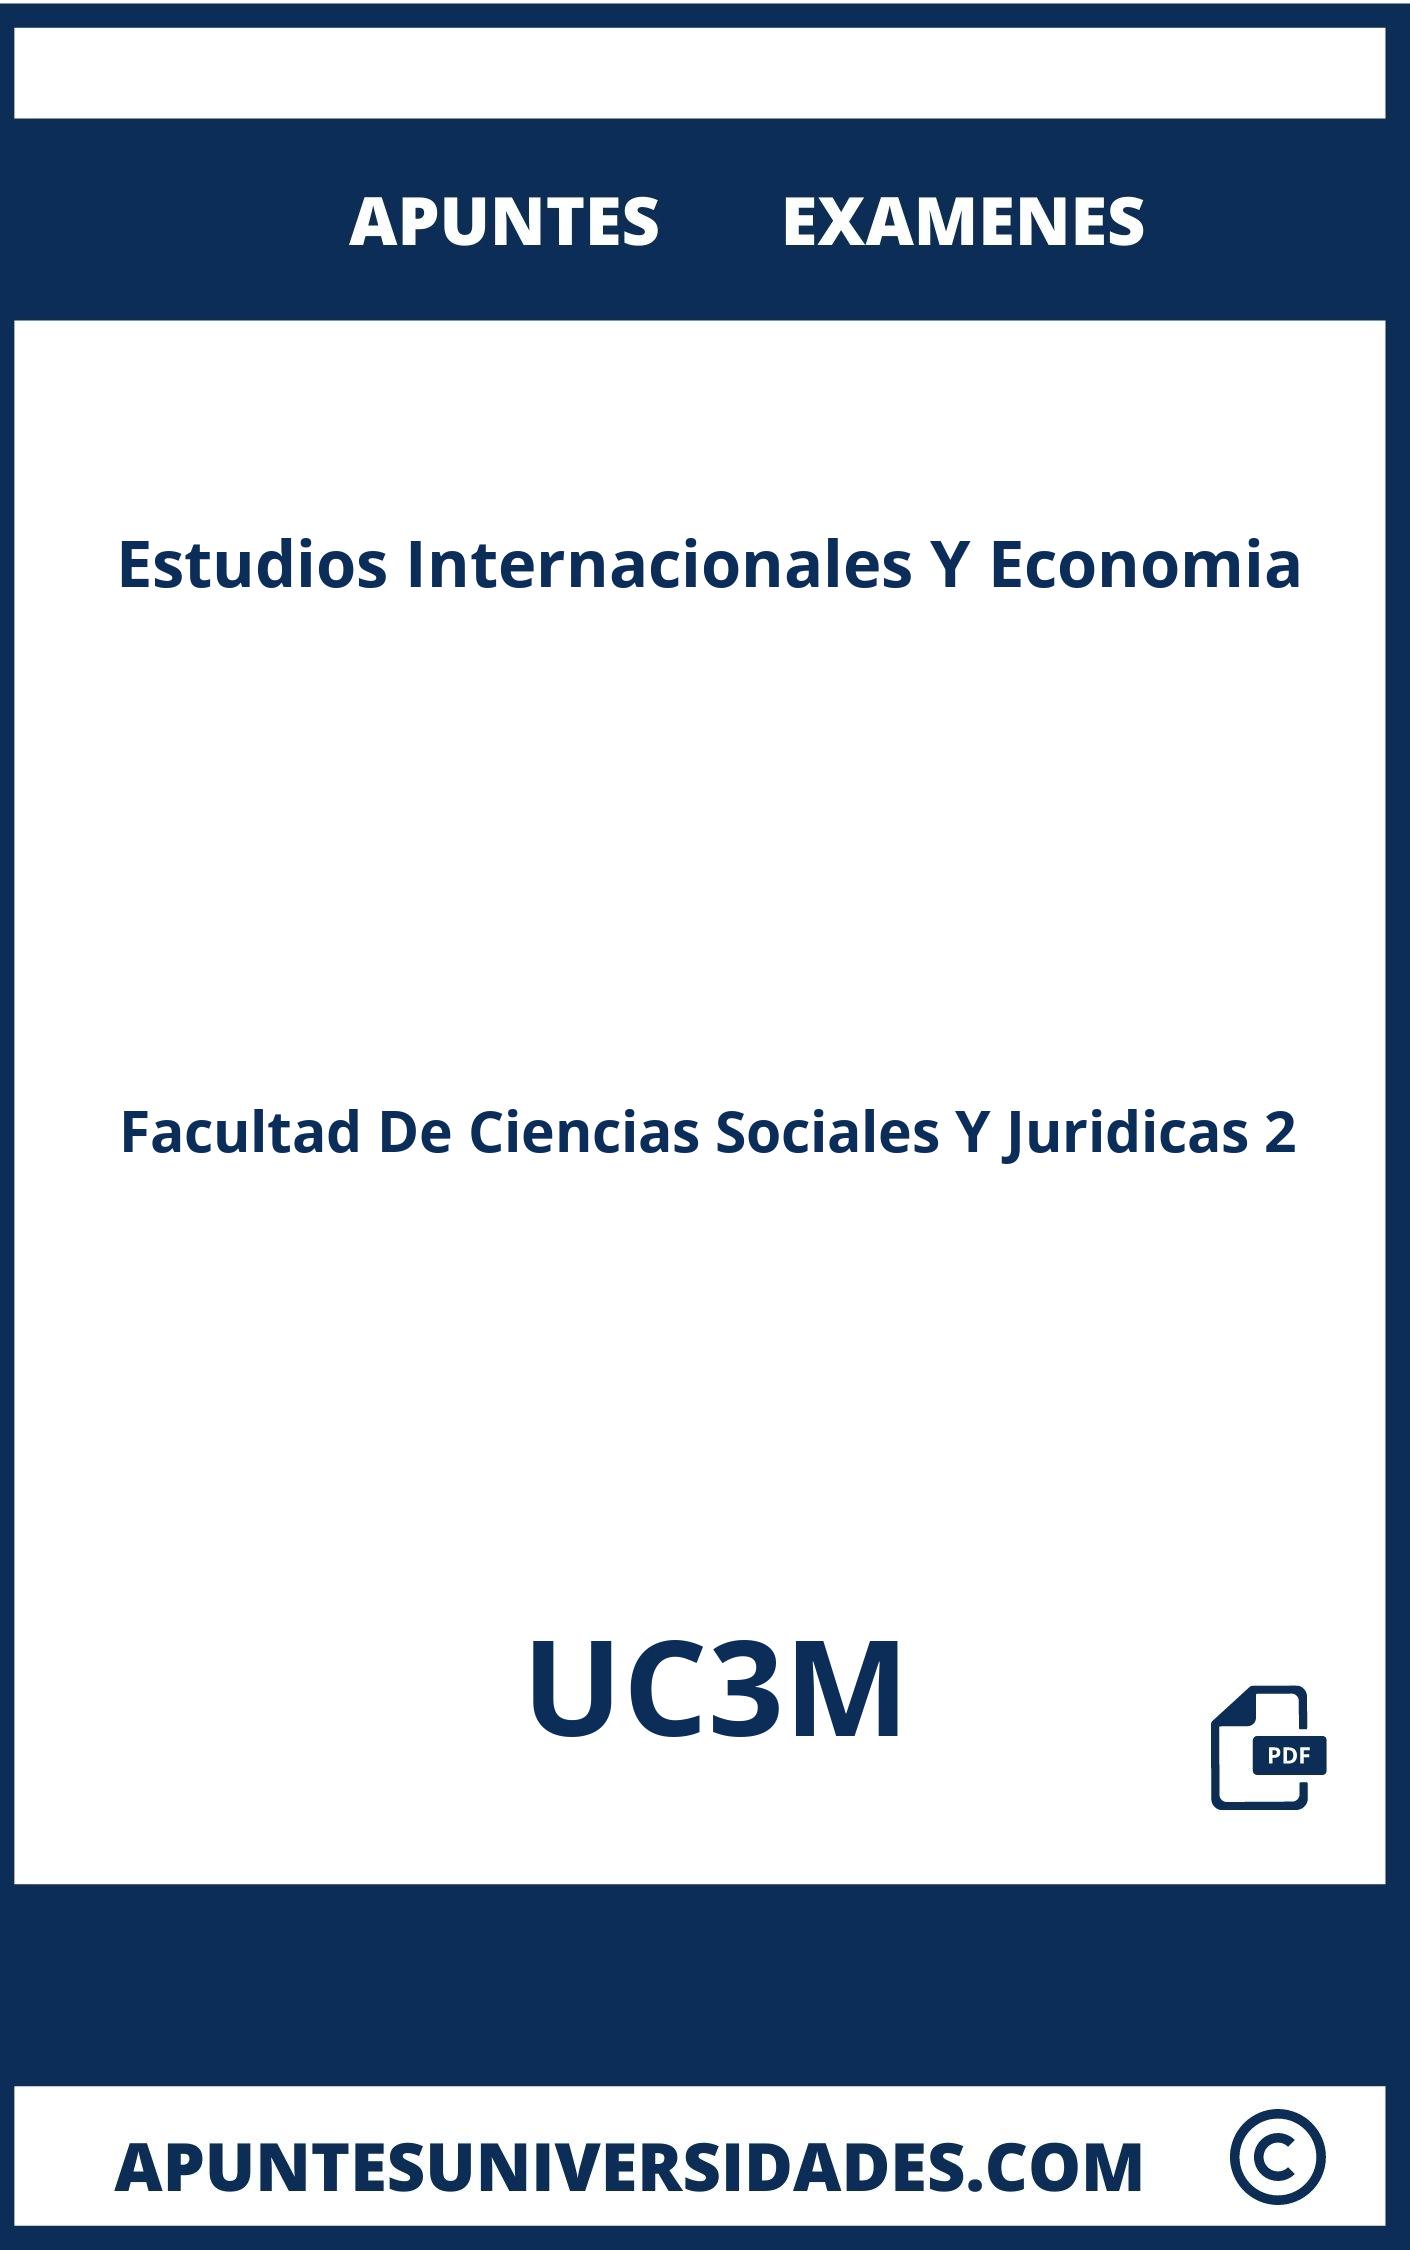 Examenes y Apuntes Estudios Internacionales Y Economia UC3M